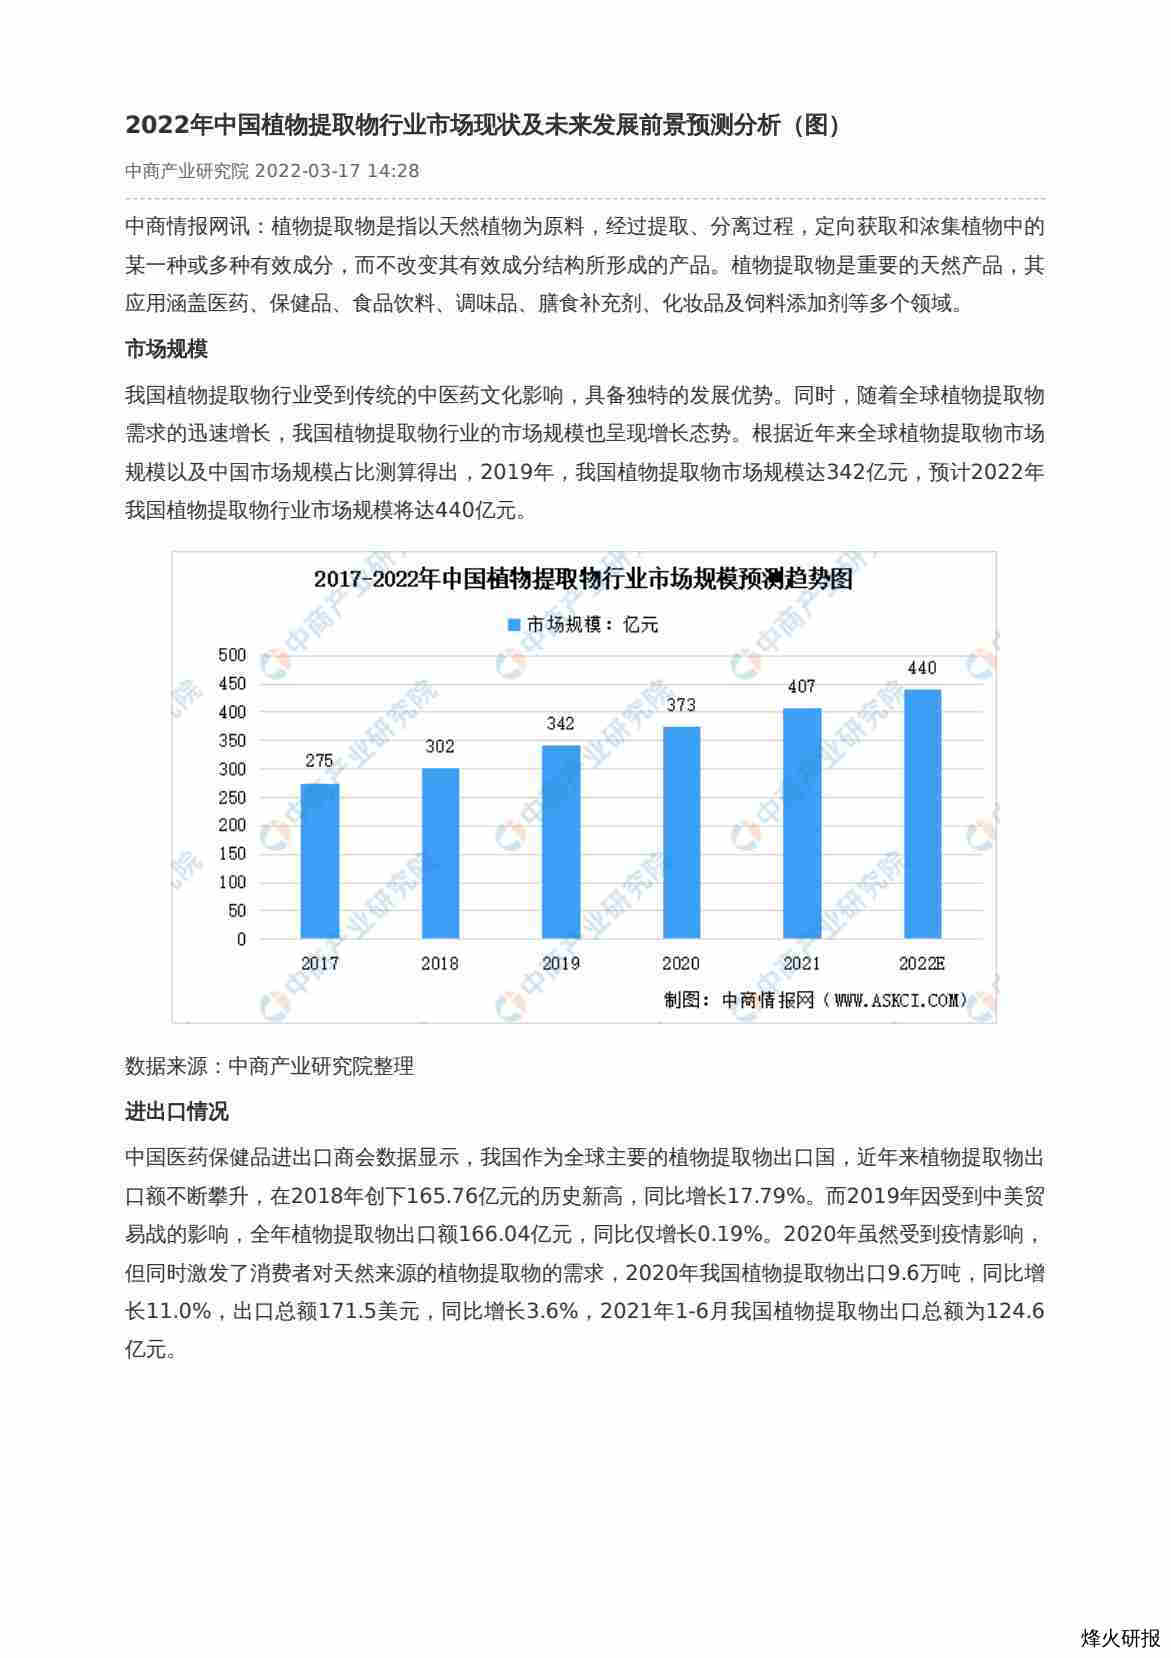 【中商产业研究院】2022年中国植物提取物行业市场现状及未来发展前景预测分析（图）.pdf-第一页